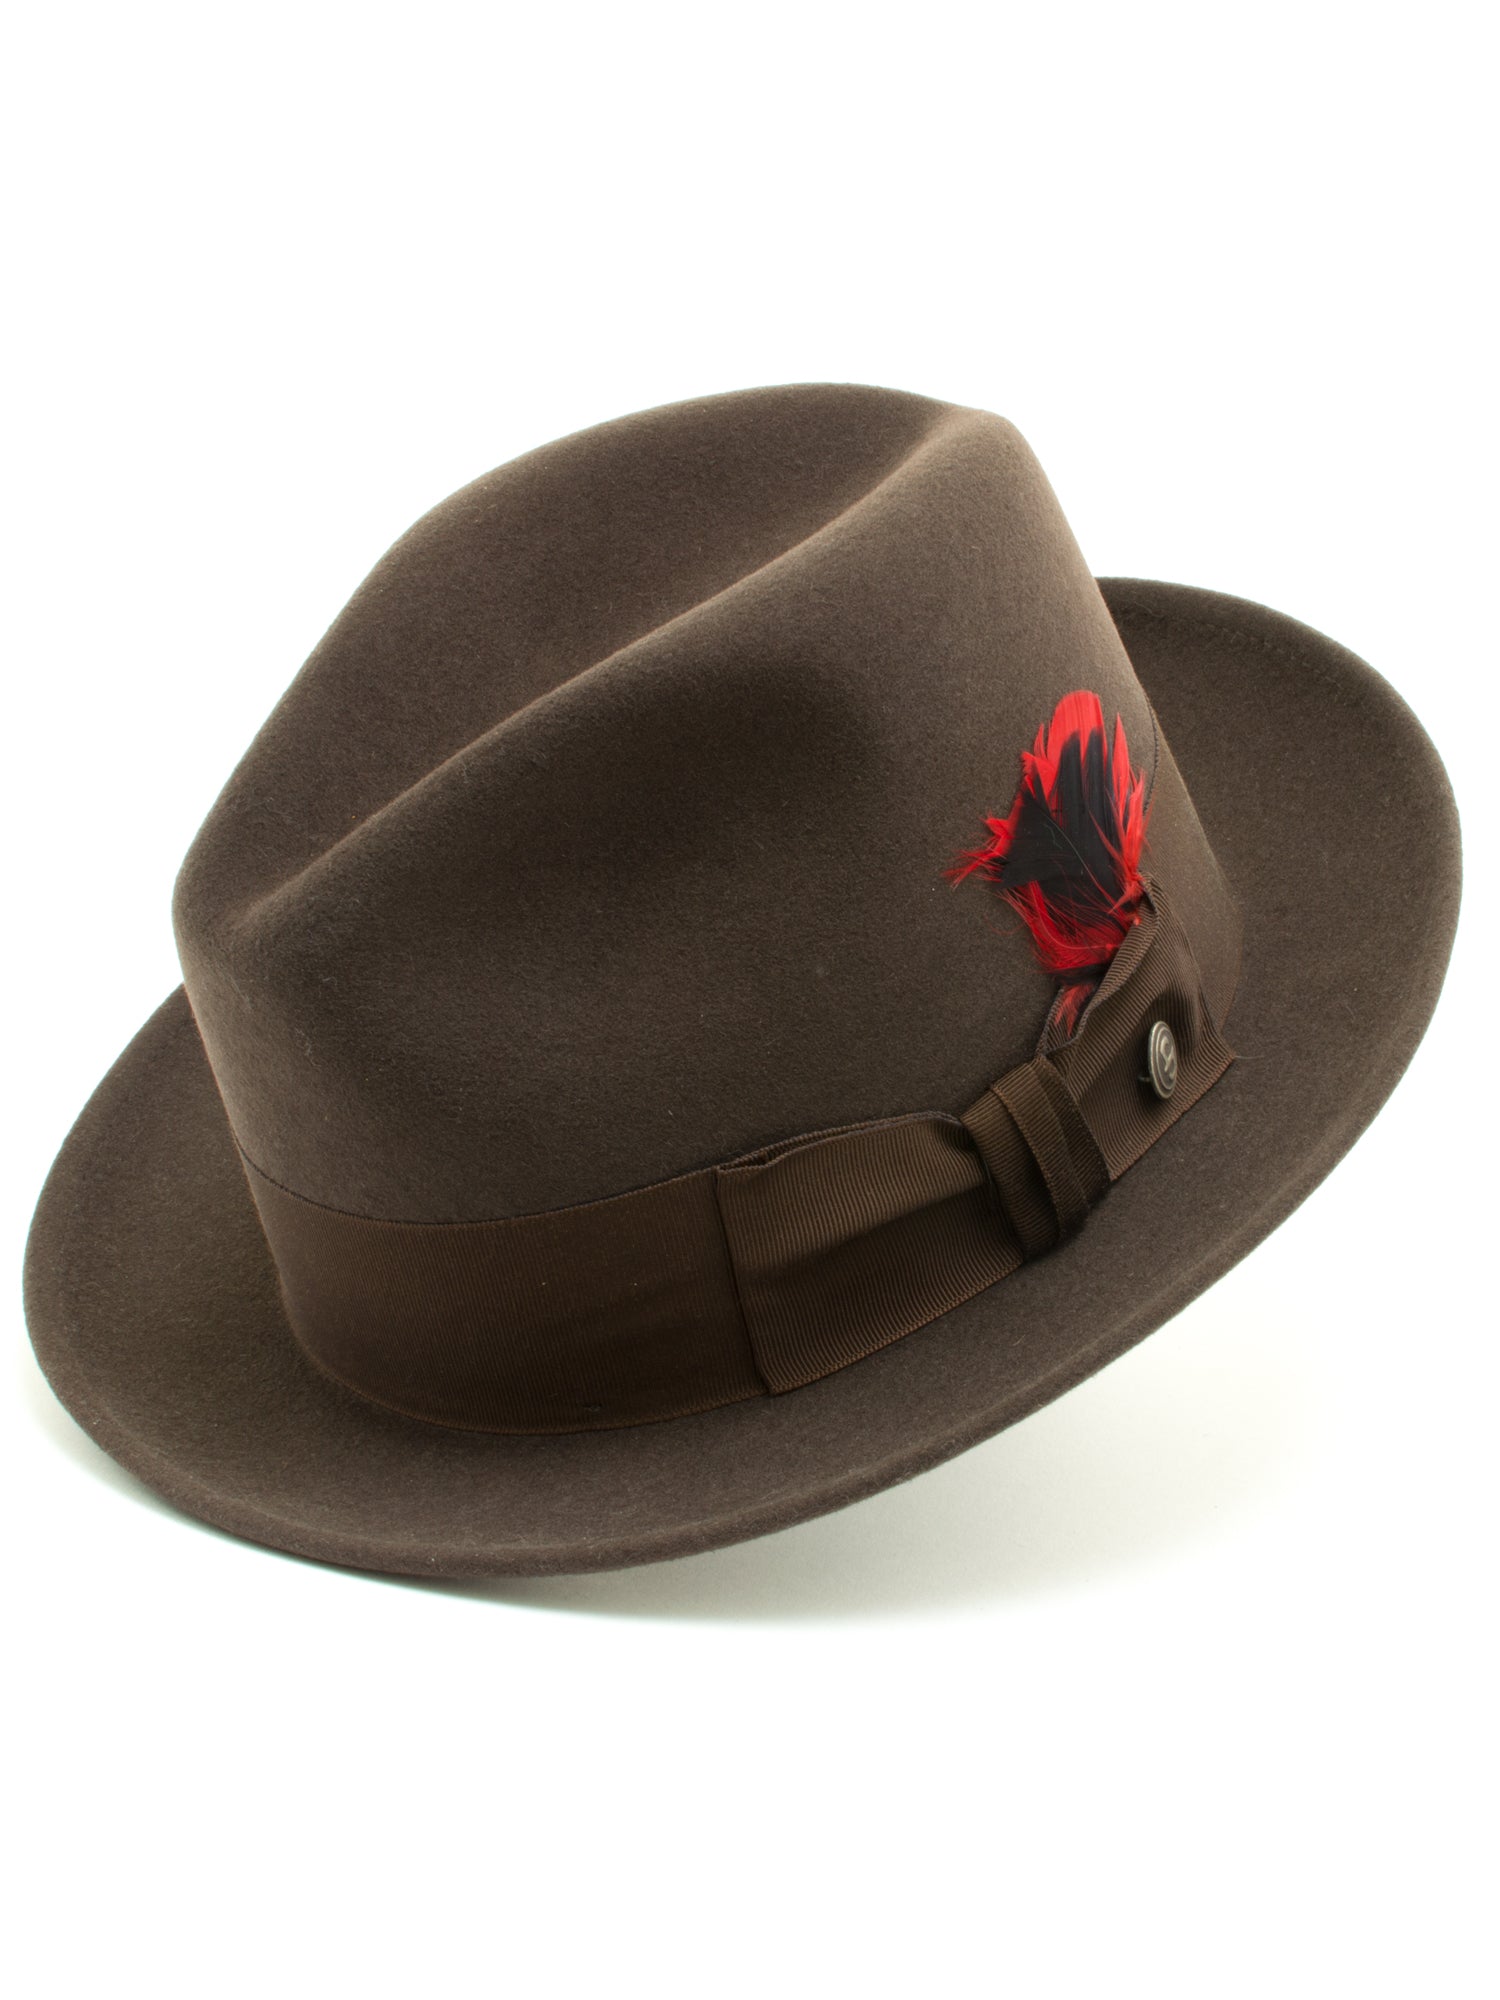 Stetson 100% Pure Wool Felt Frederick Hats in Mink